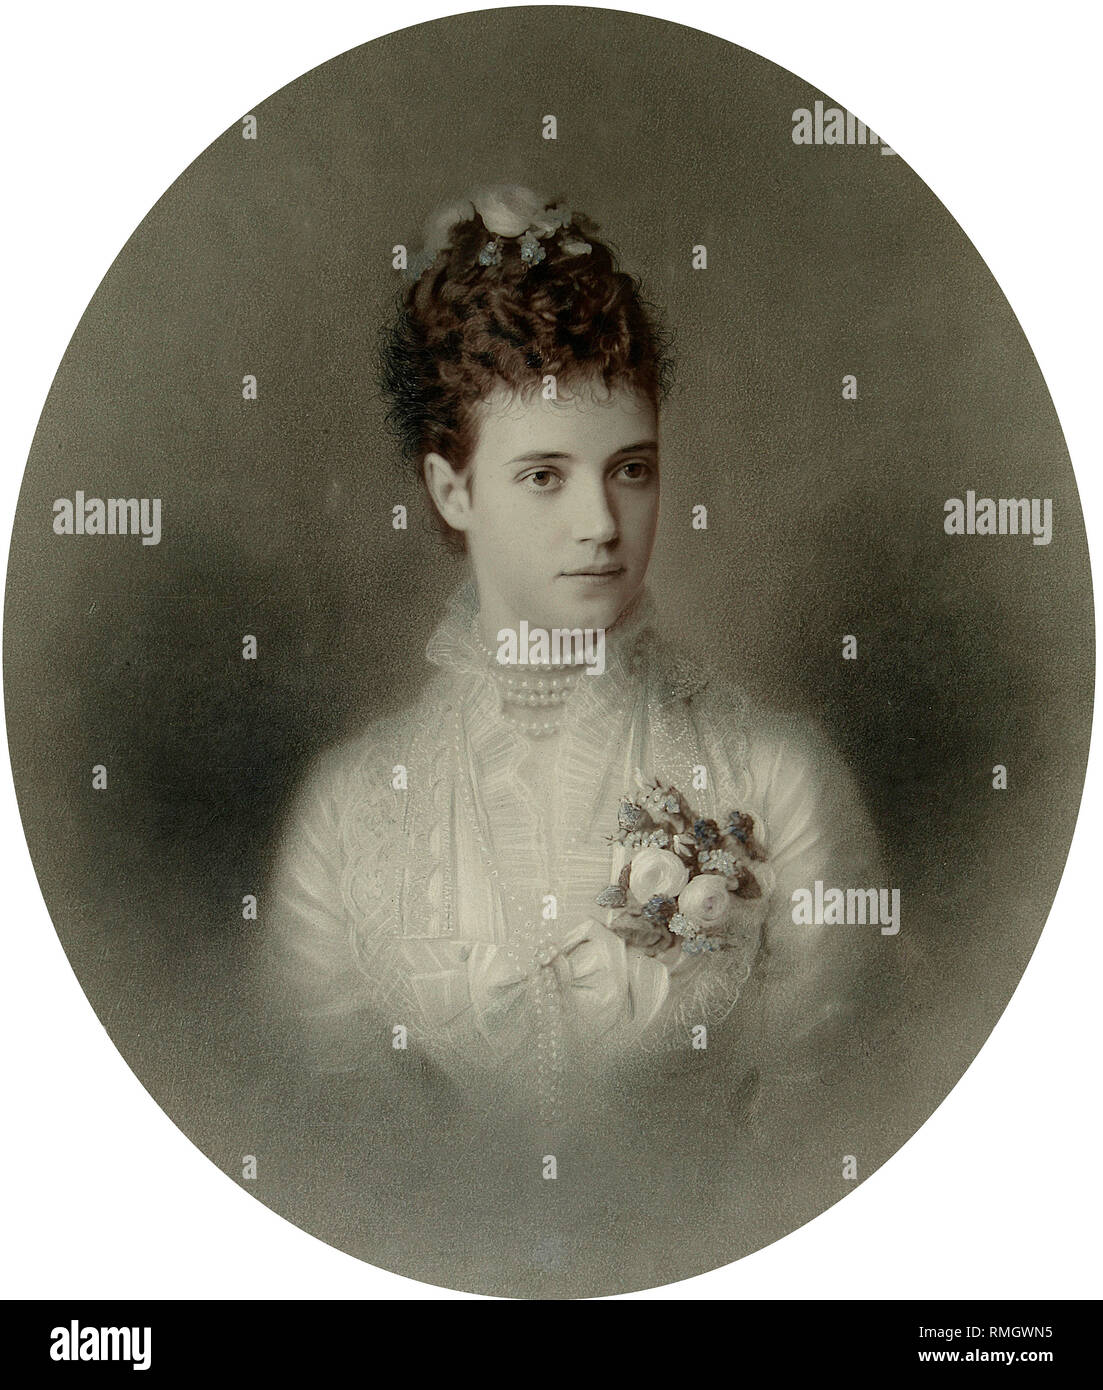 Retrato de la Emperatriz María Fyodorovna (Dagmar de Dinamarca) (1847-1928). La albúmina foto Foto de stock